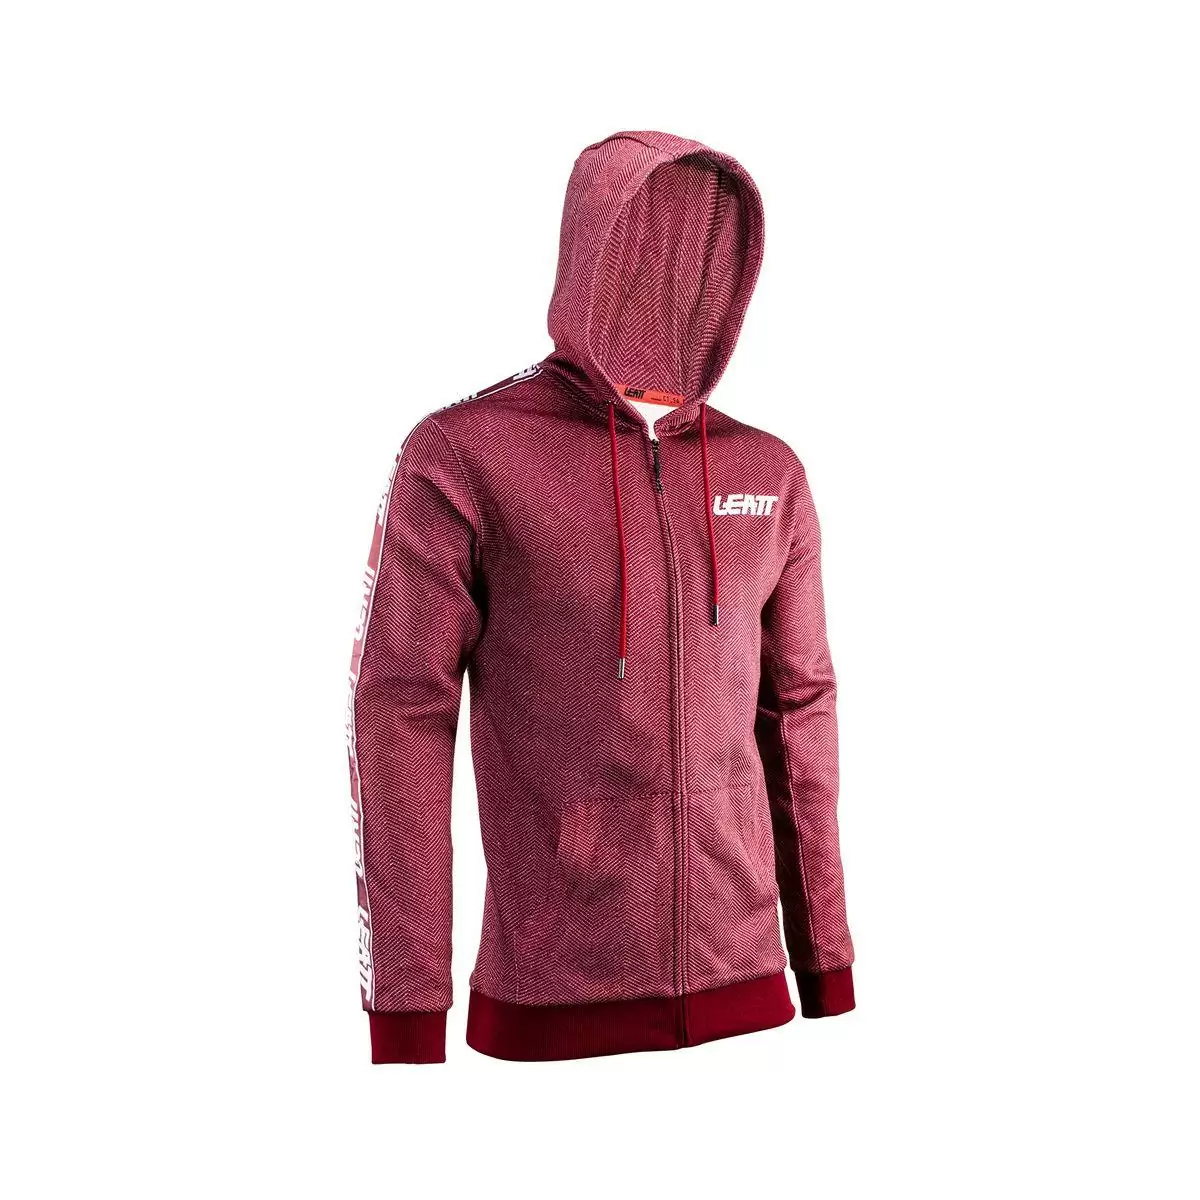 Red Premium Zip Hoodie Sweatshirt Size XXL - image